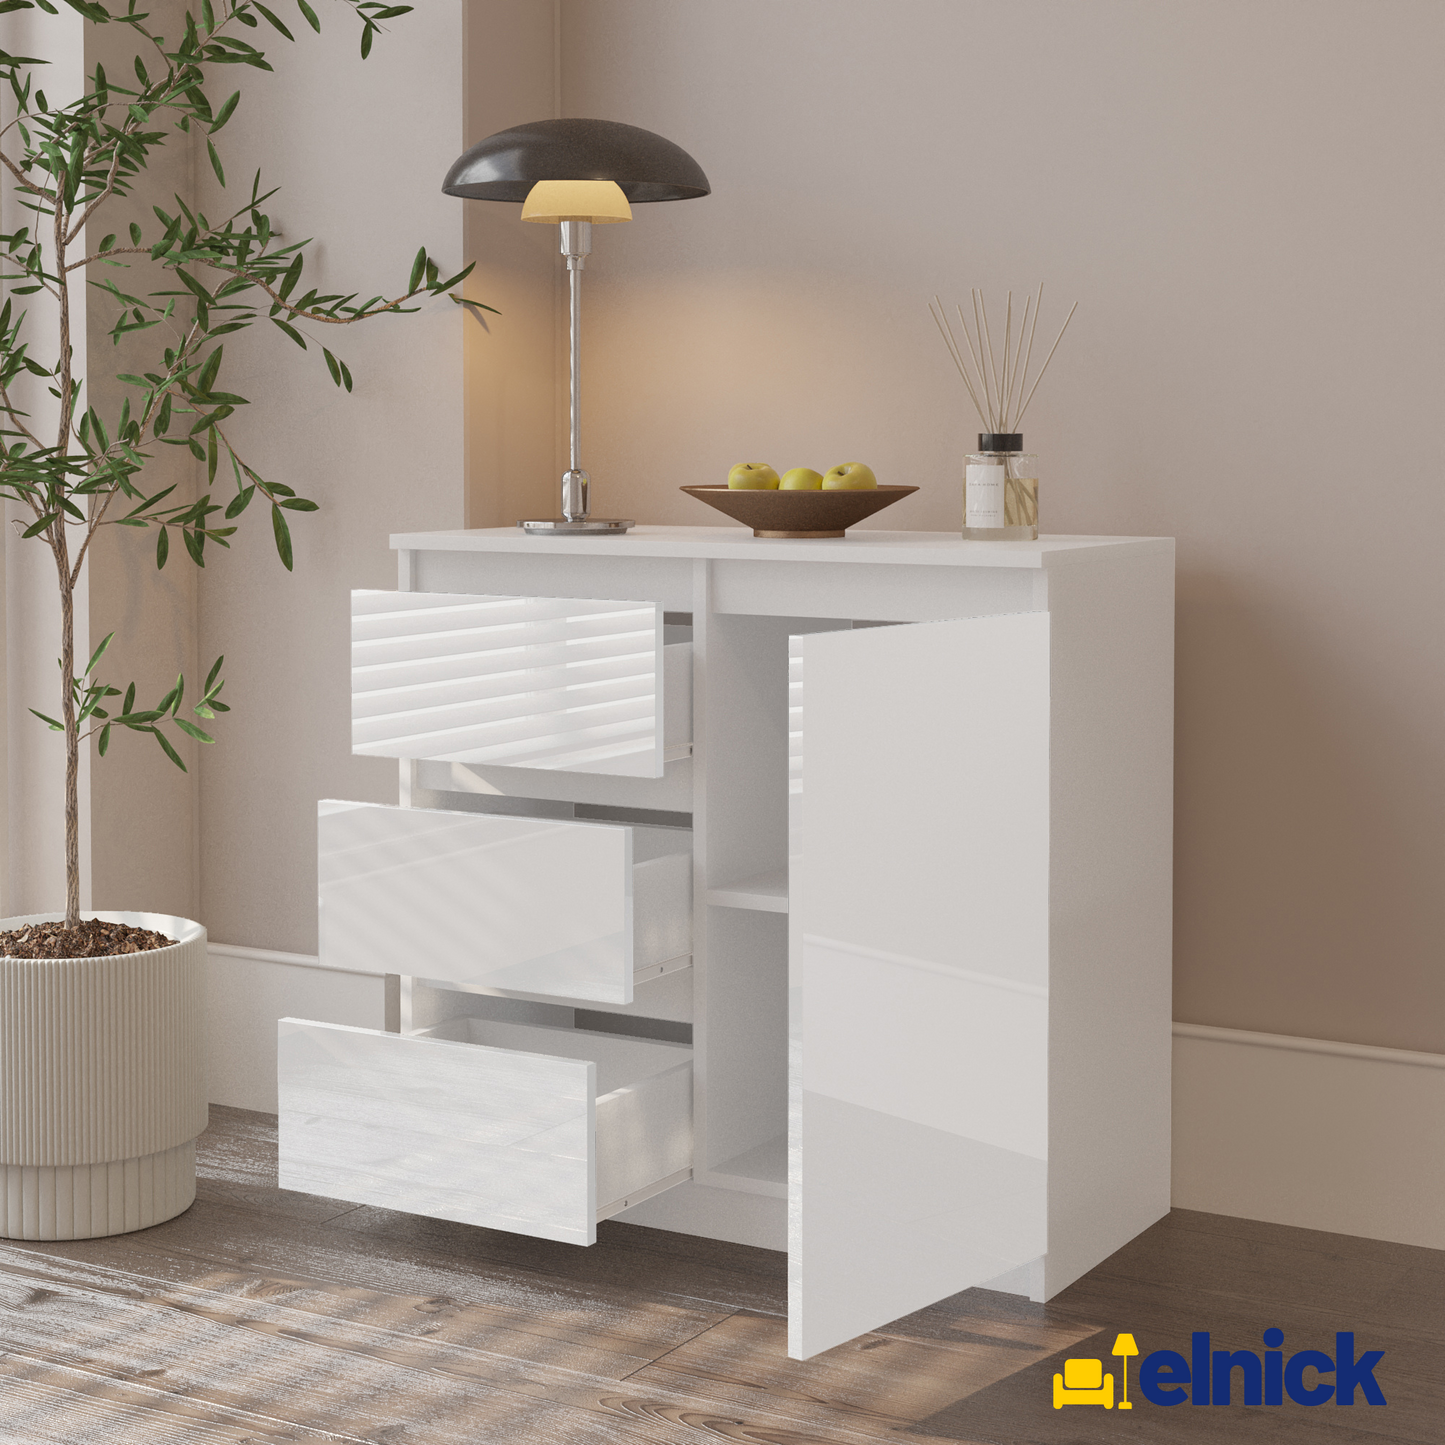 MIKEL - Kommode / Sideboard mit 3 Schubladen und 1 Tür - Weiß Matt / Weiß Gloss